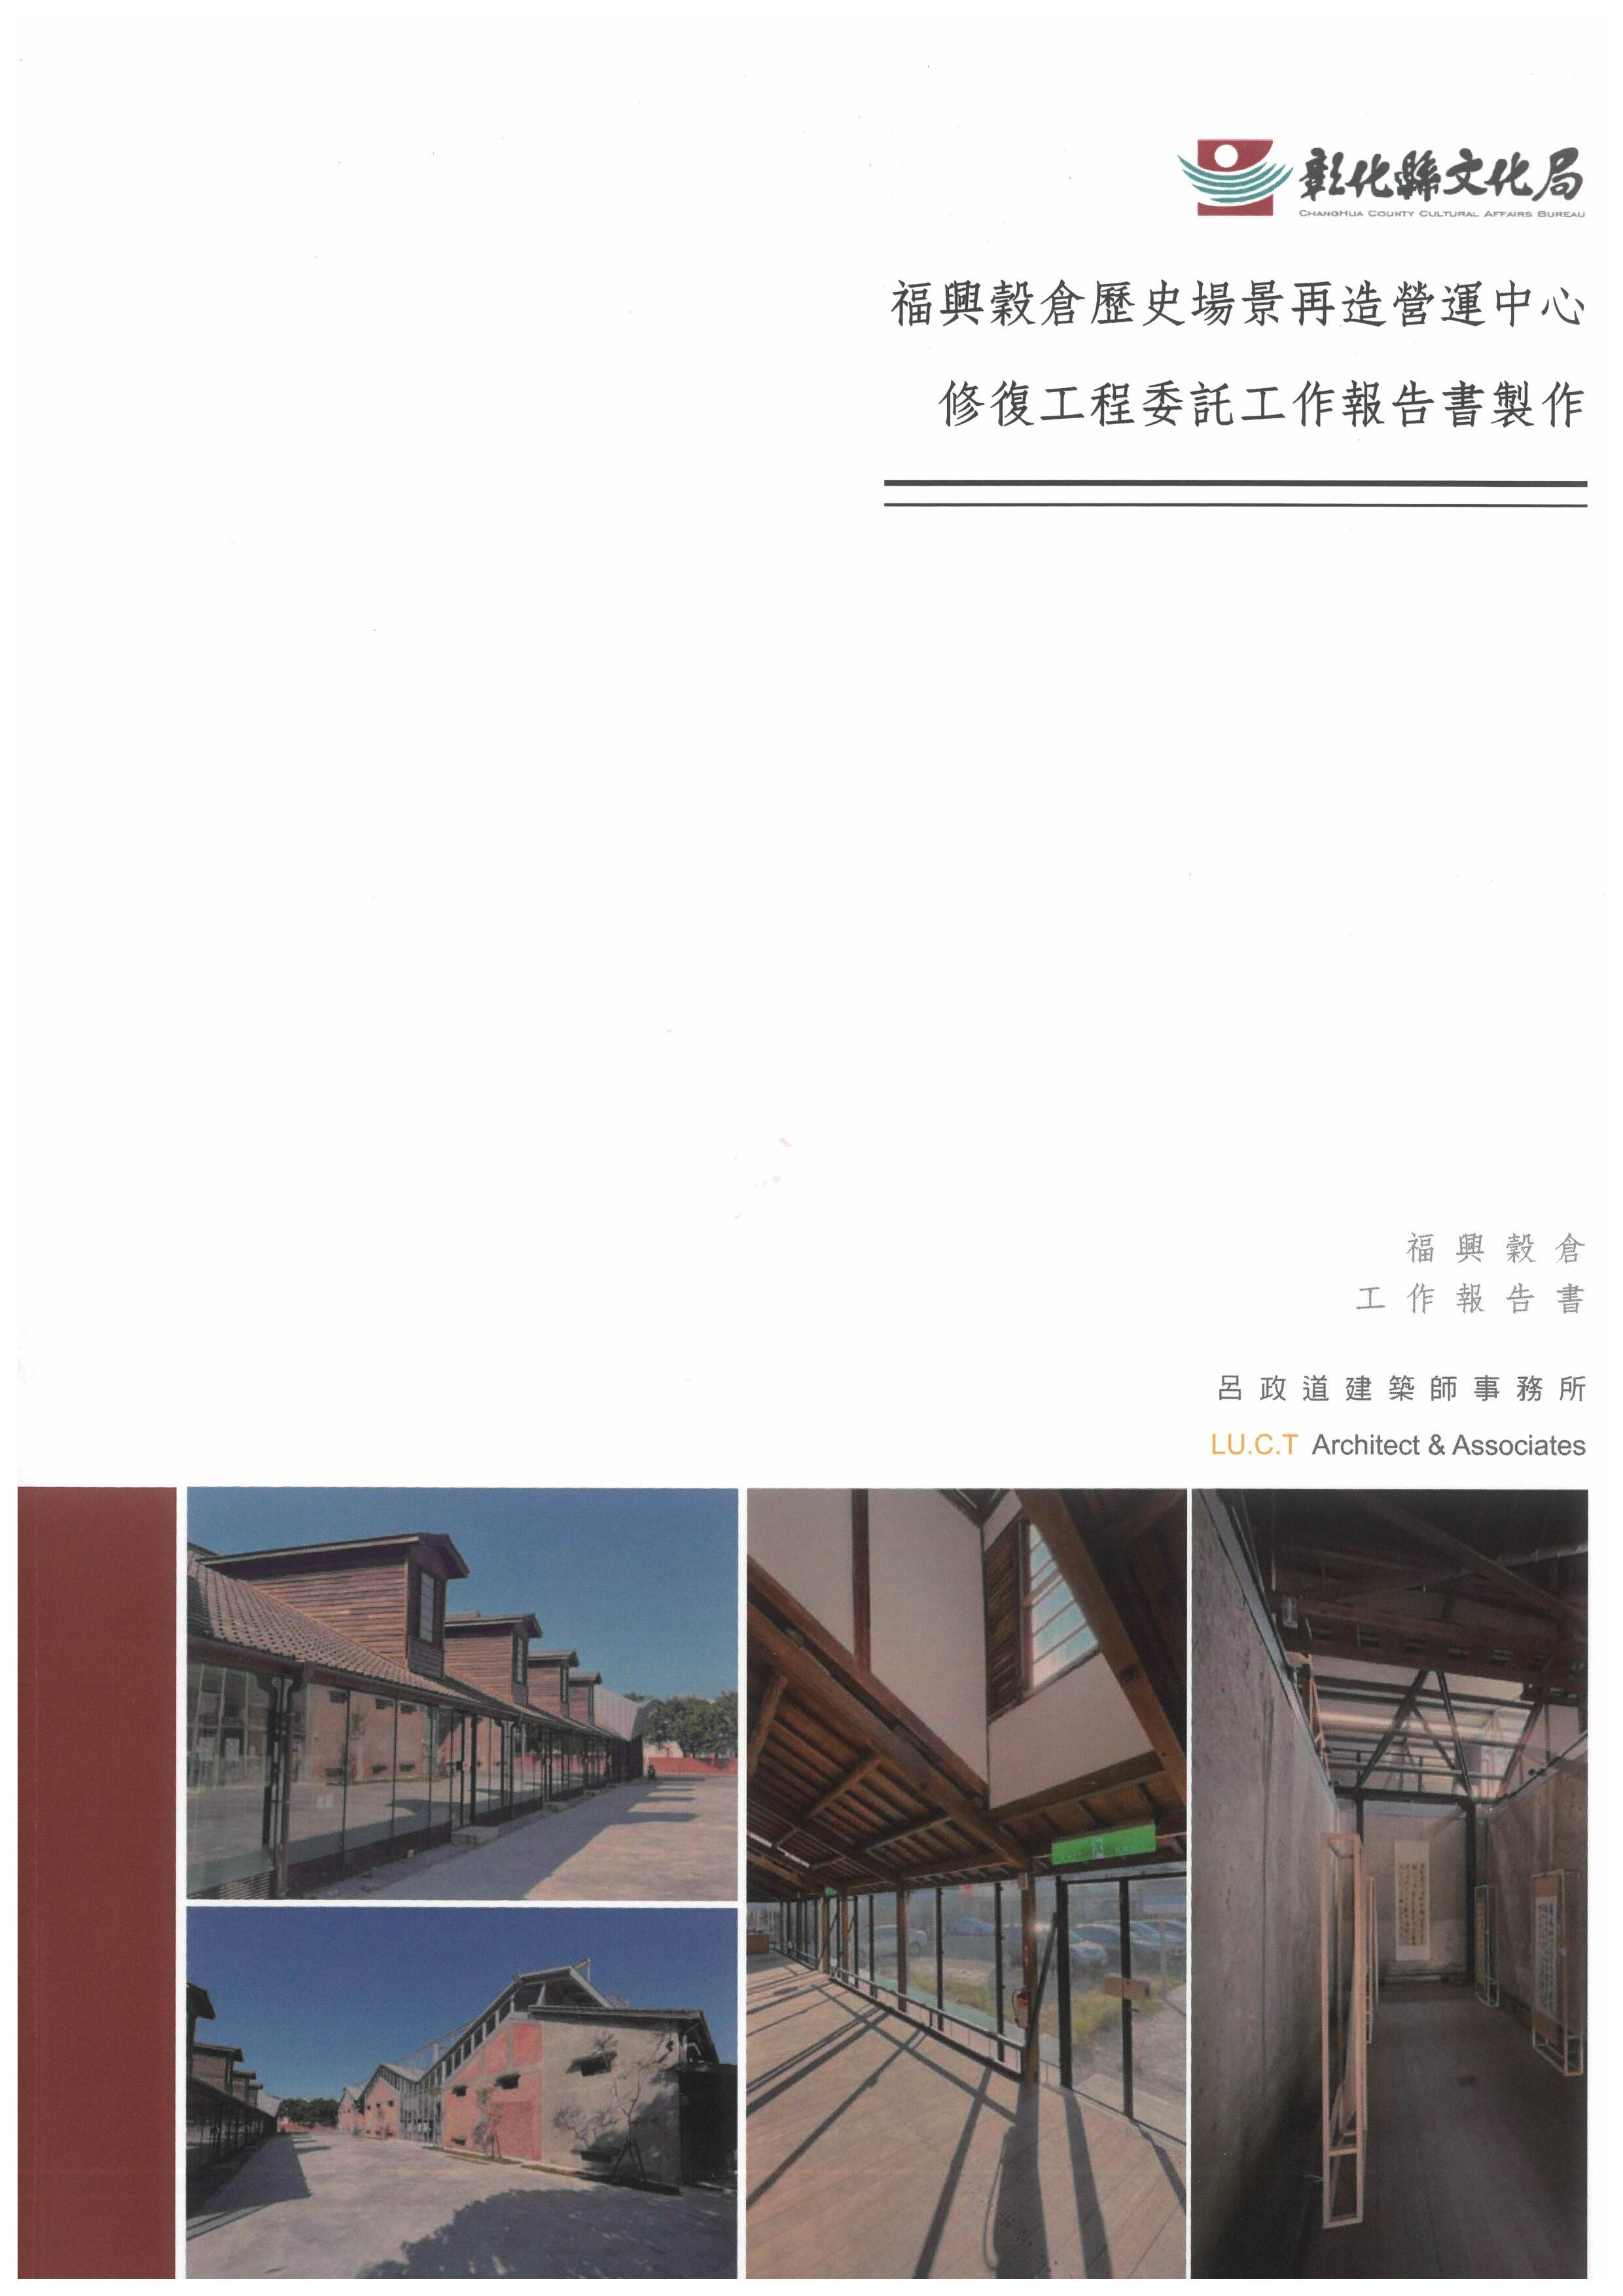 福興穀倉歷史場景再造營運中心修復工程委託工作報告書製作